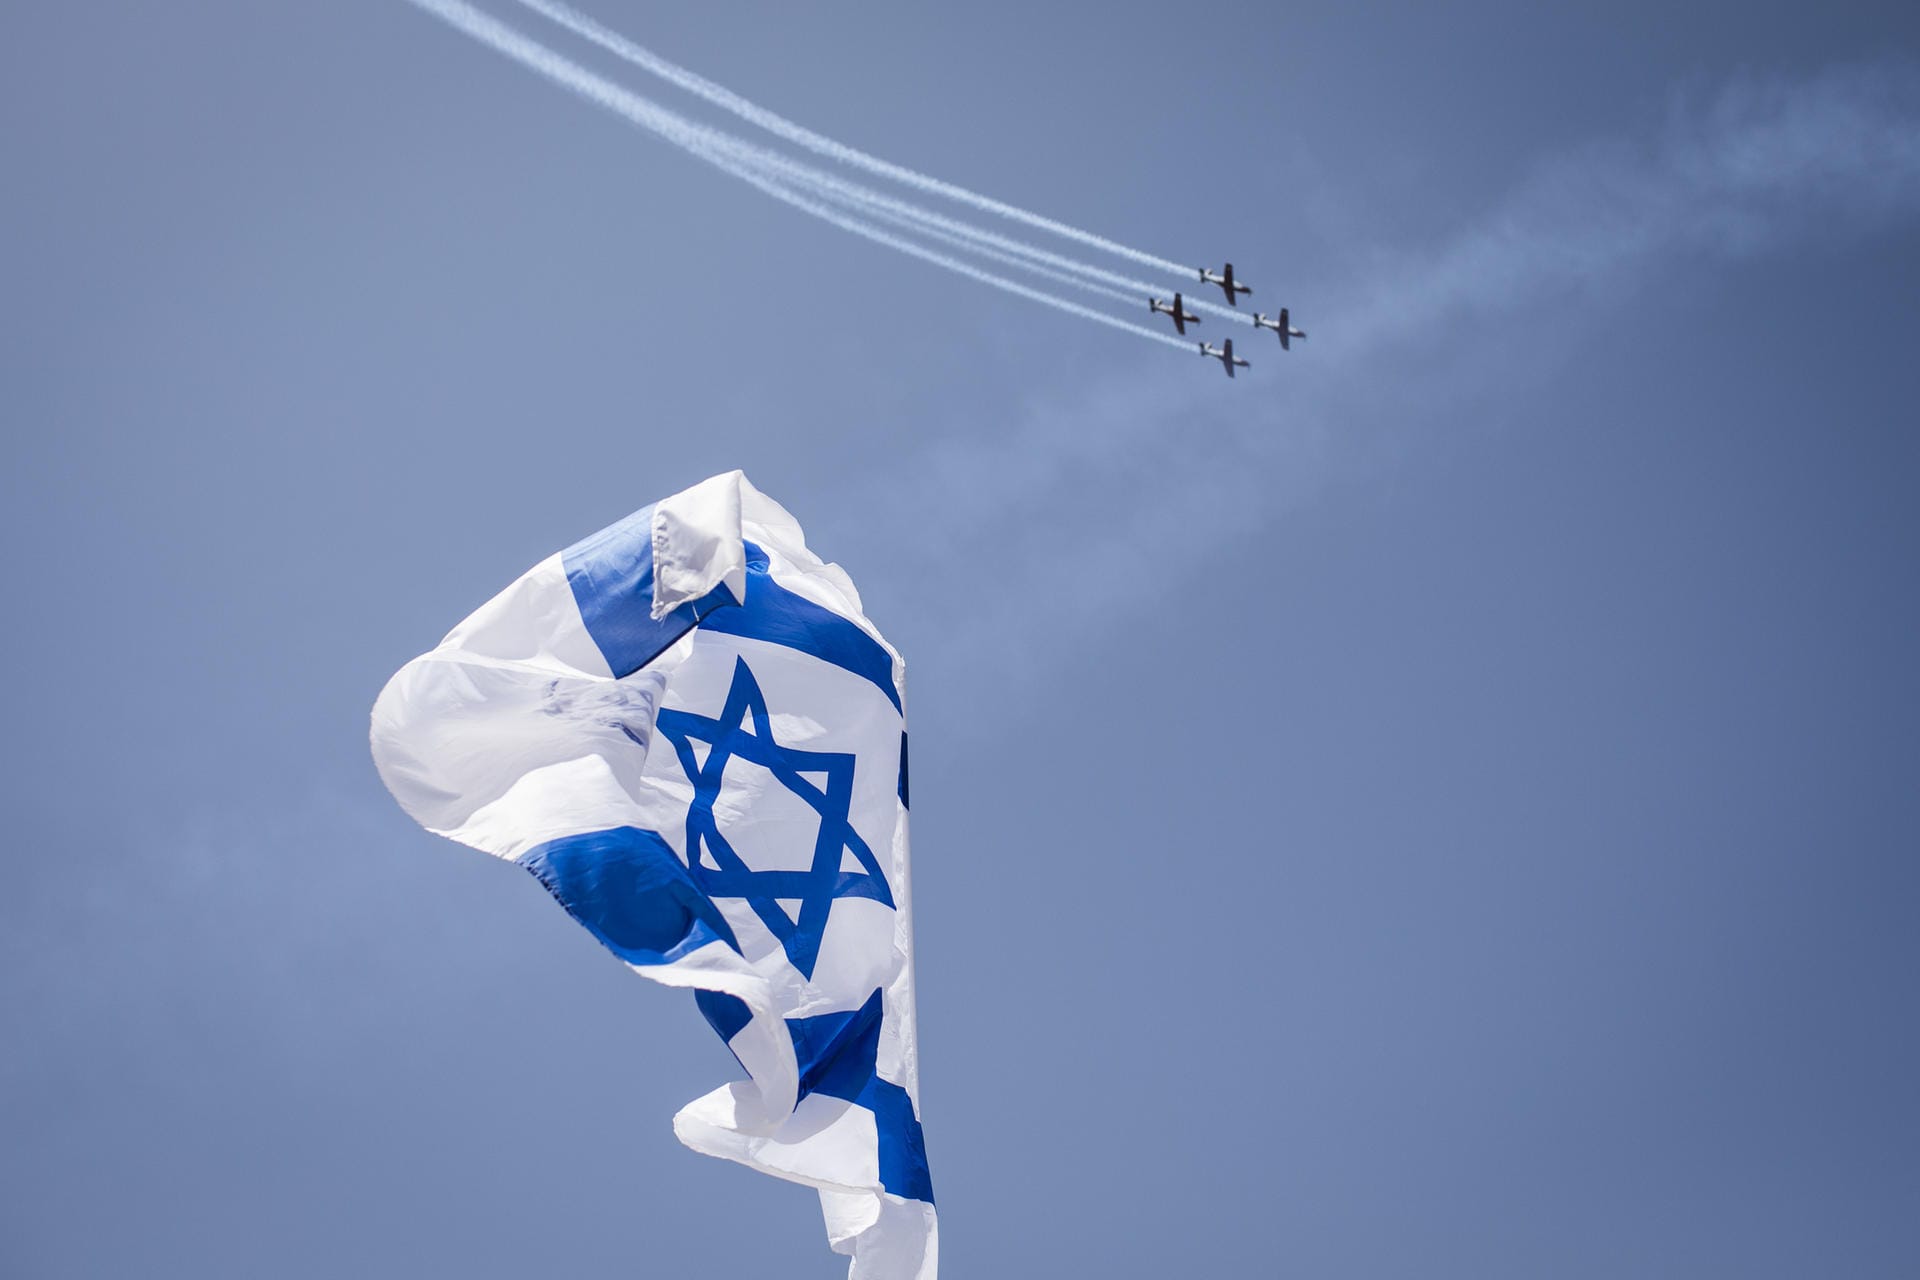 Nach dem jüdischen Kalender feierte Israel bereits im April seinen 70. Unabhängigkeitstag. Während das Land als wirtschaftlicher und technologischer Spitzenreiter der Region gilt, überschattet der Konflikt mit den Palästinsern die Feierlichkeiten.